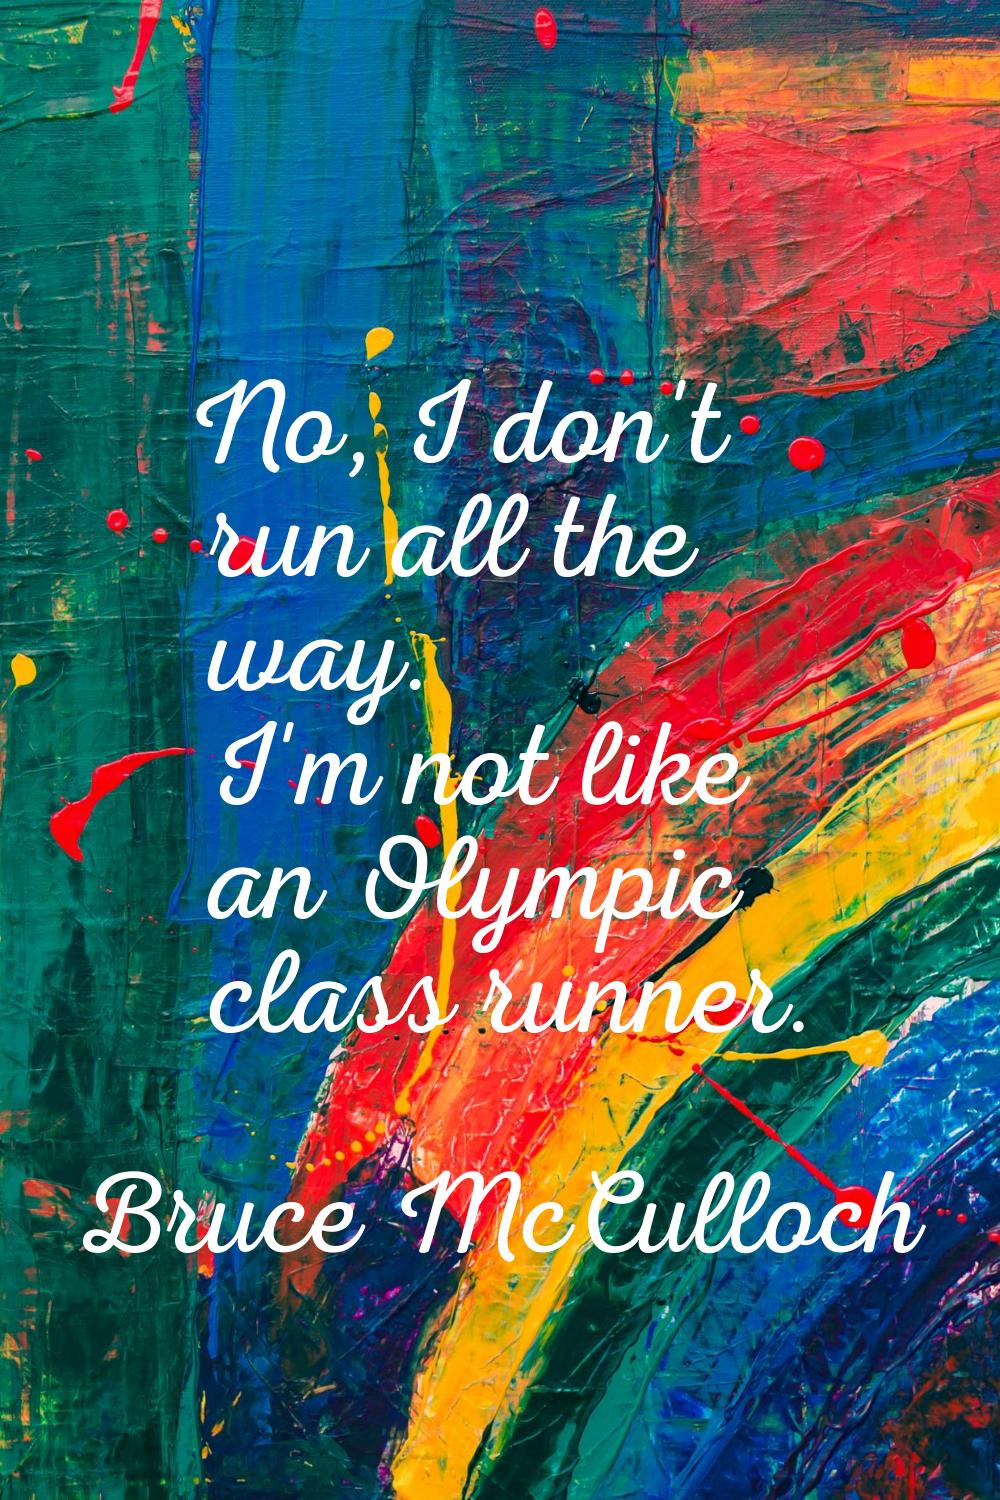 No, I don't run all the way. I'm not like an Olympic class runner.